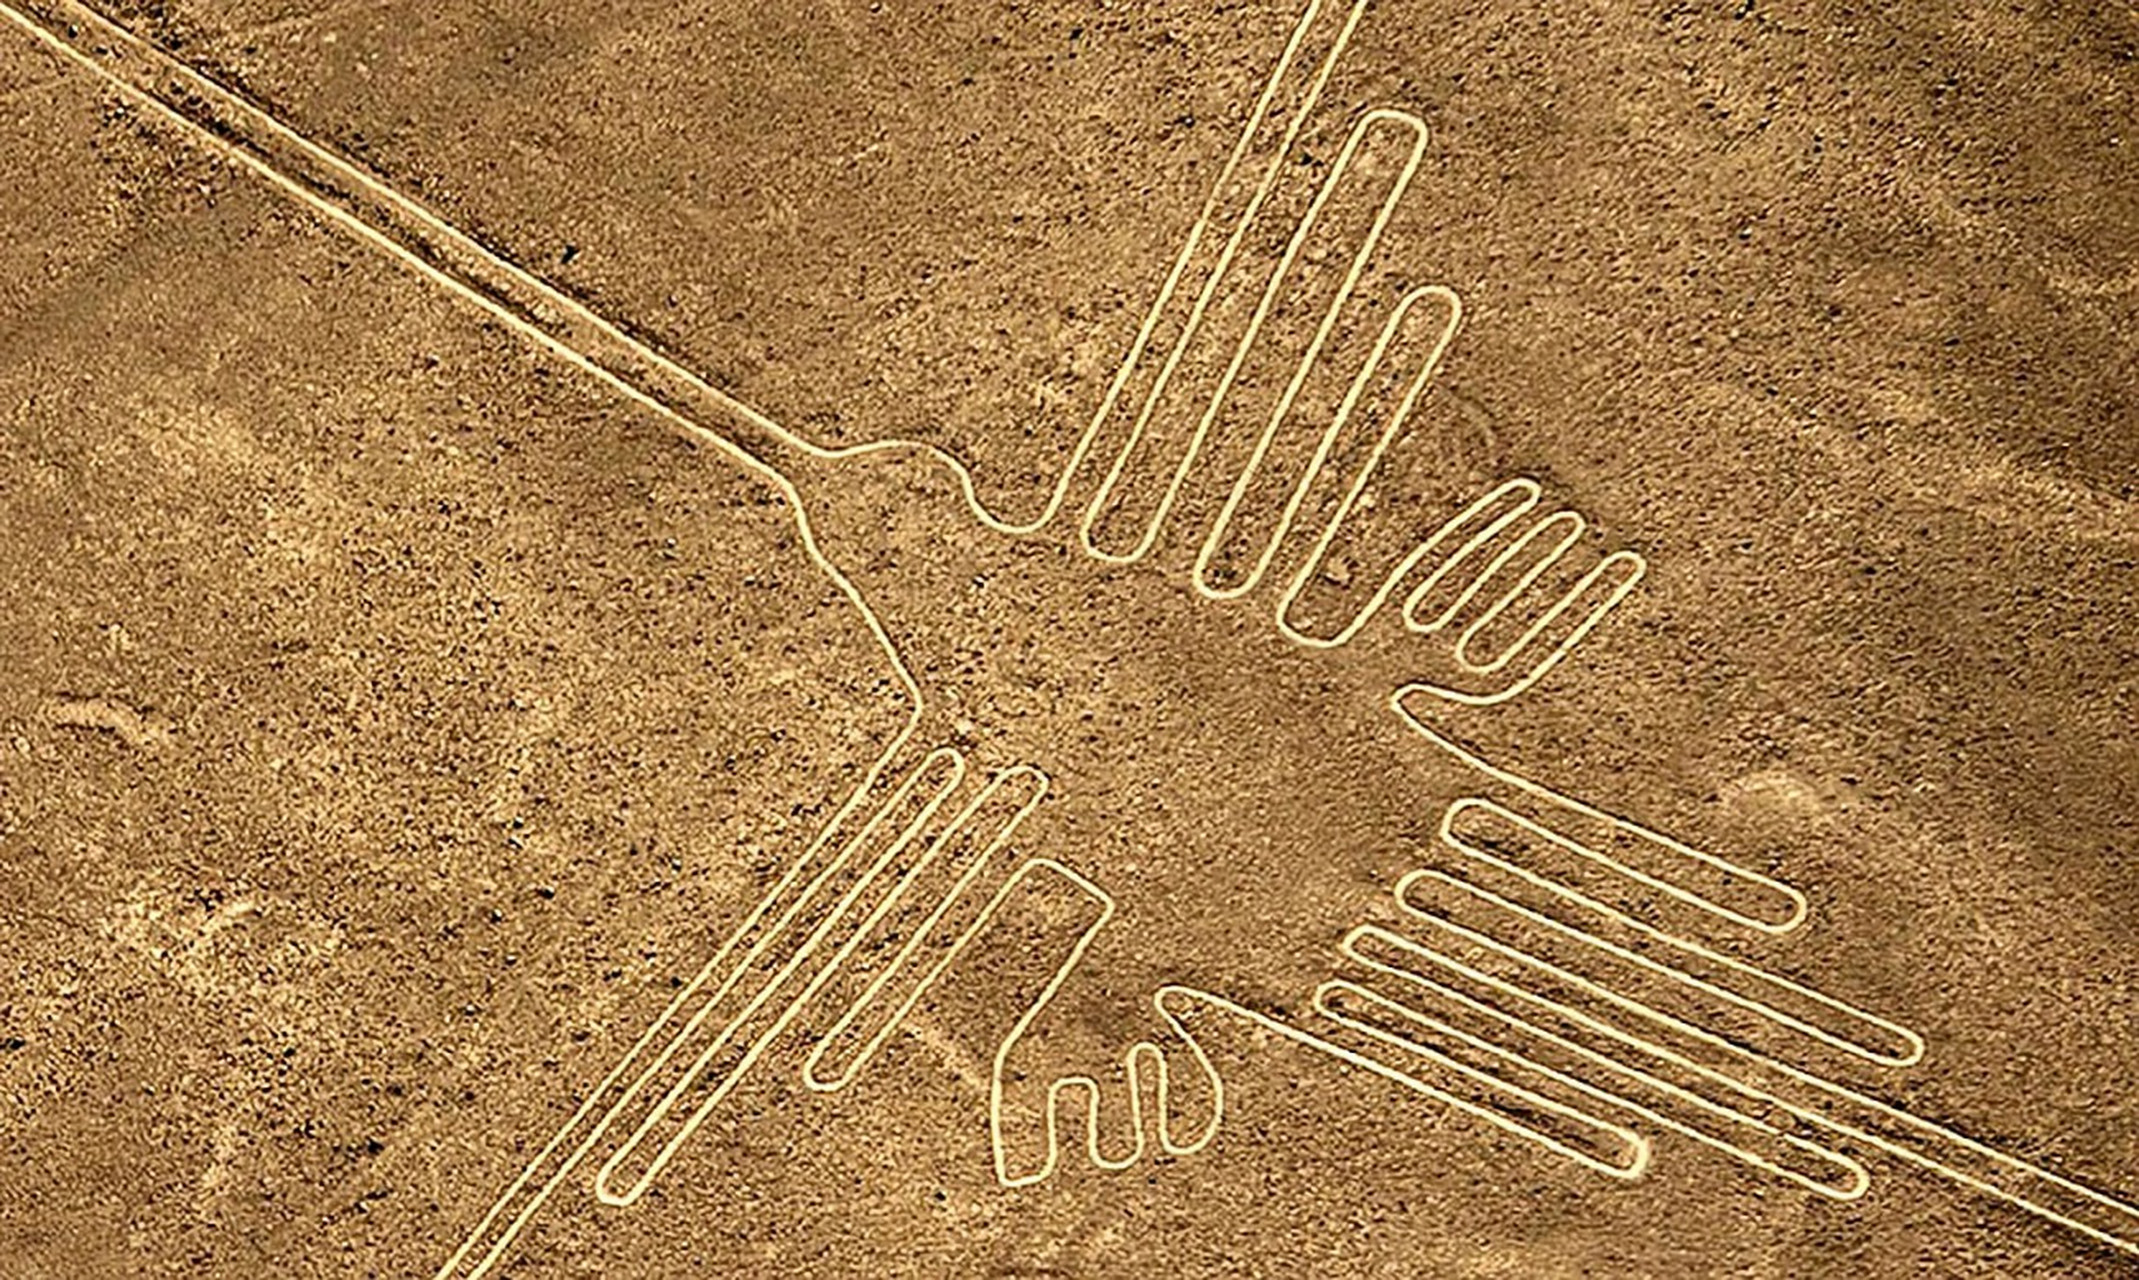 世界未解之谜——纳斯卡线条之谜  在秘鲁的纳斯卡沙漠中,存在着一组